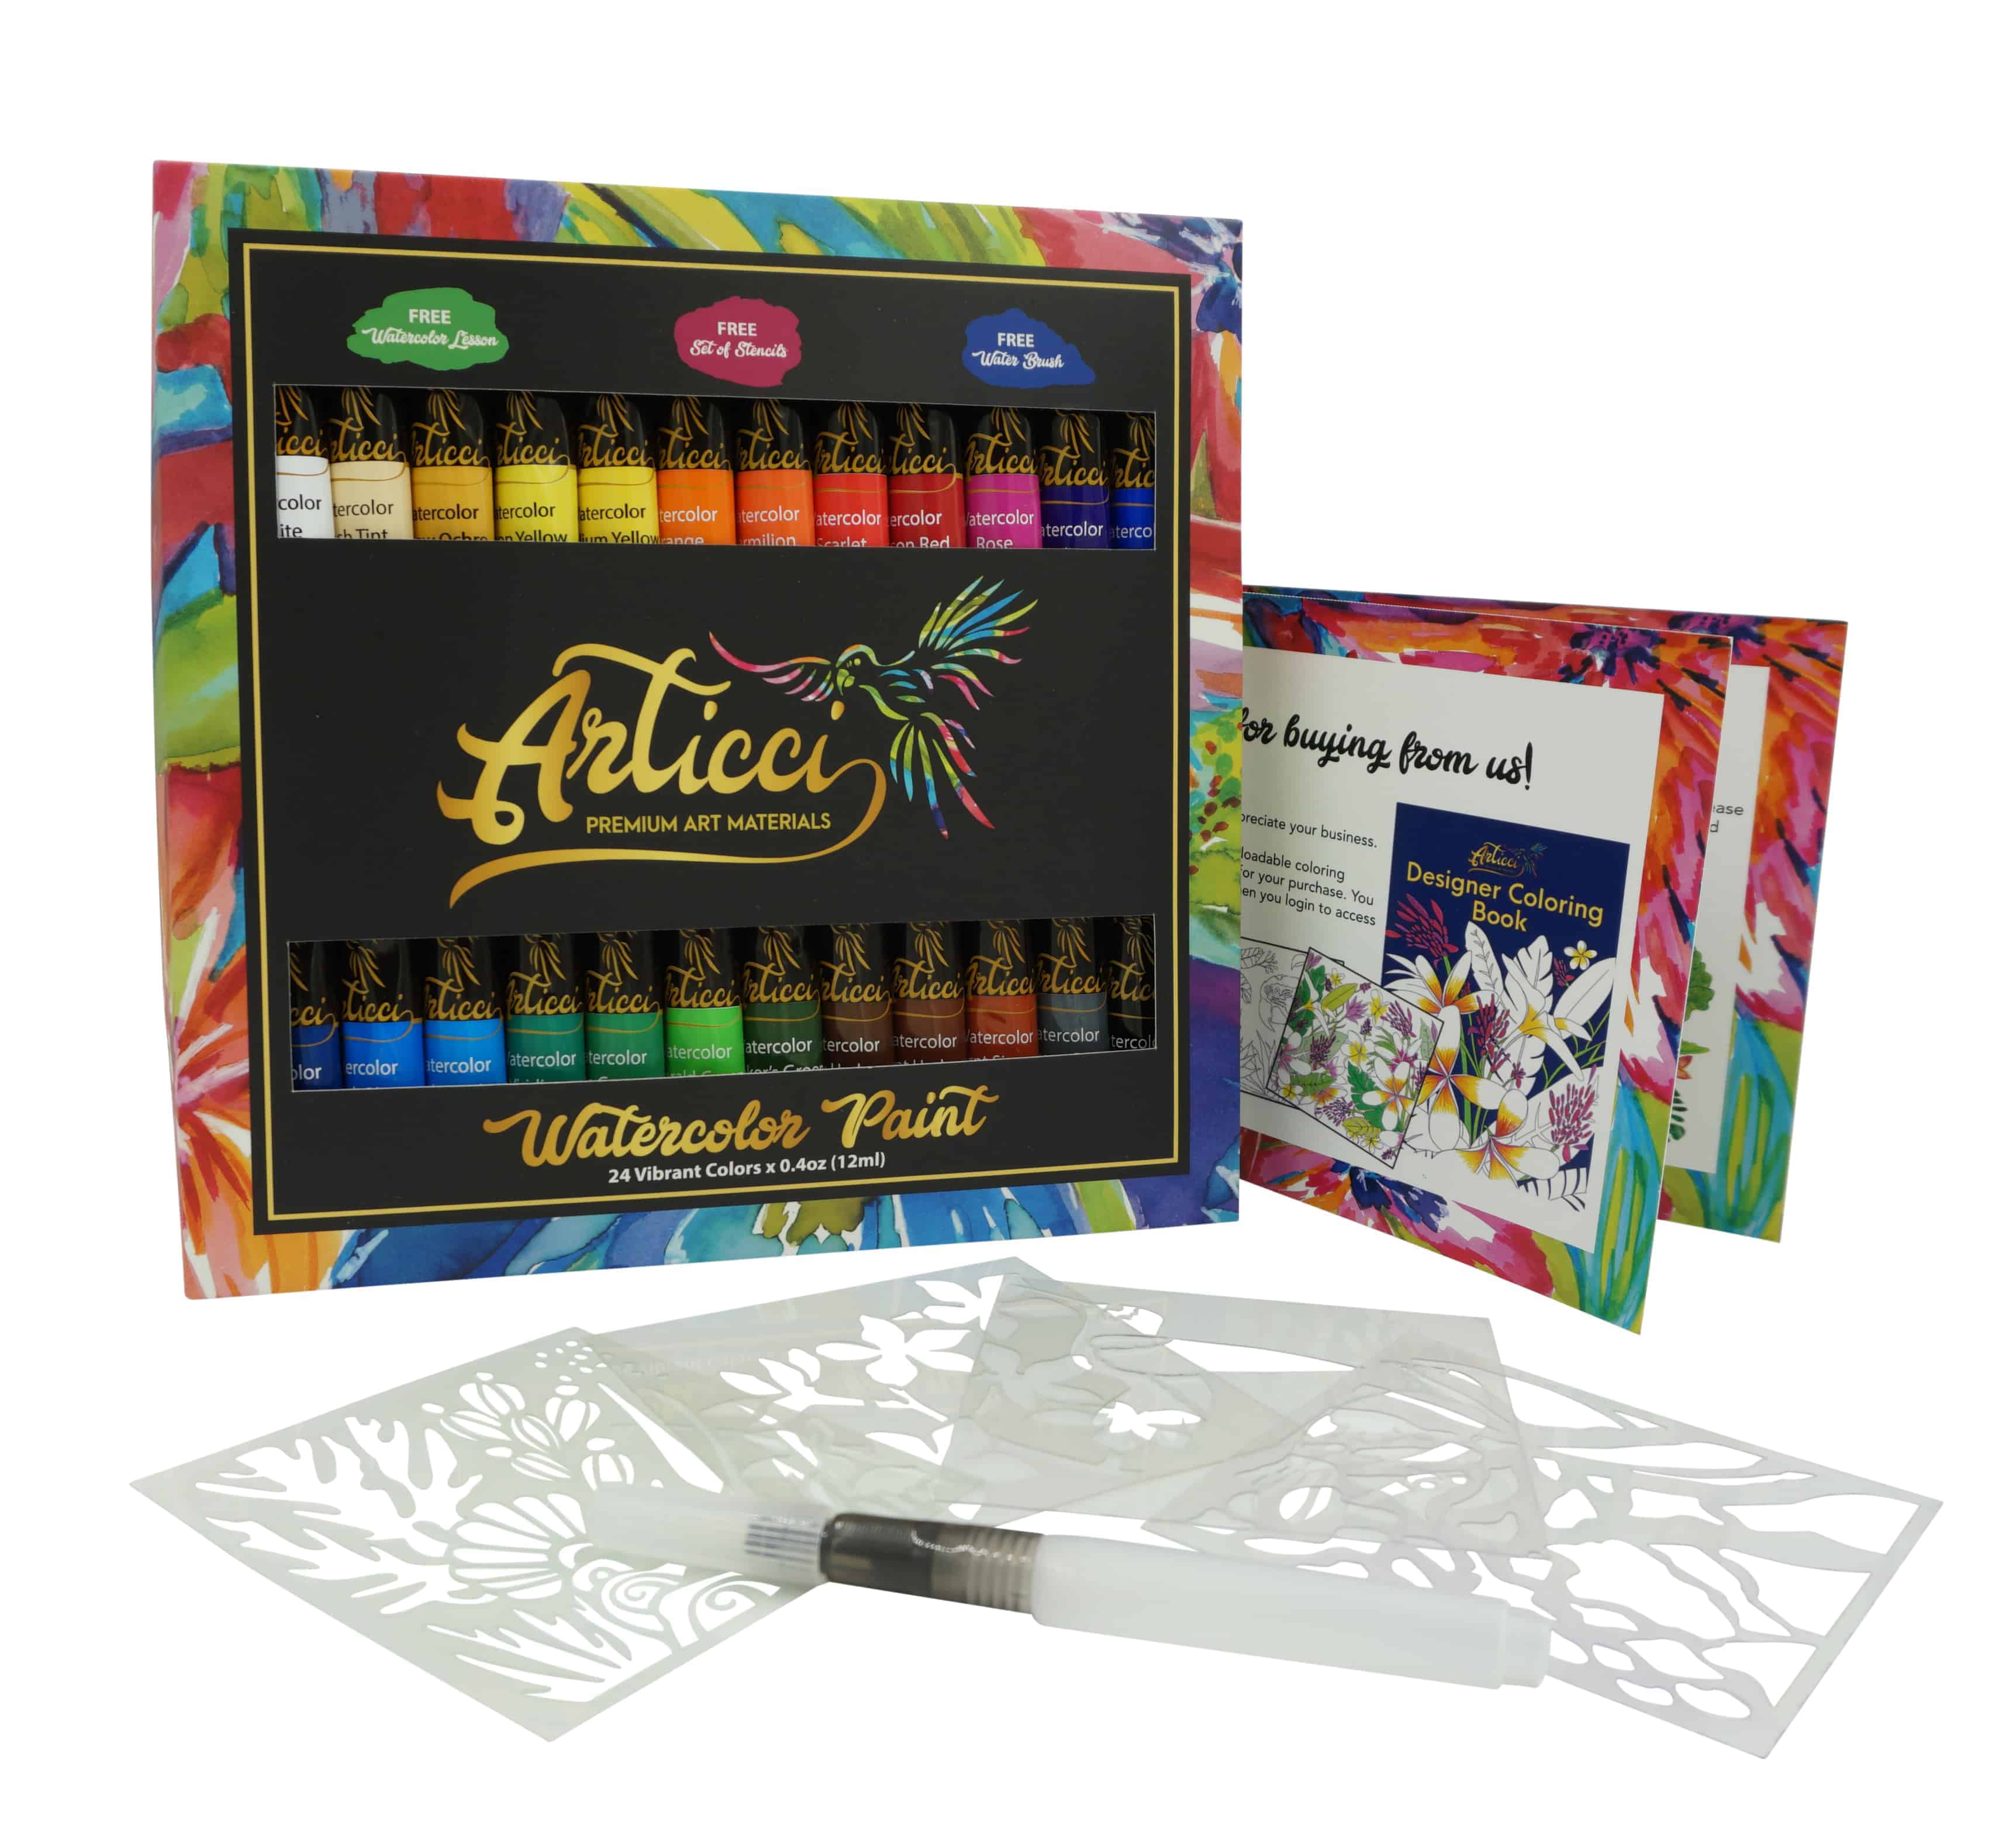 ArtSkills Premium Essential Artist Studio Art Supply Kit.